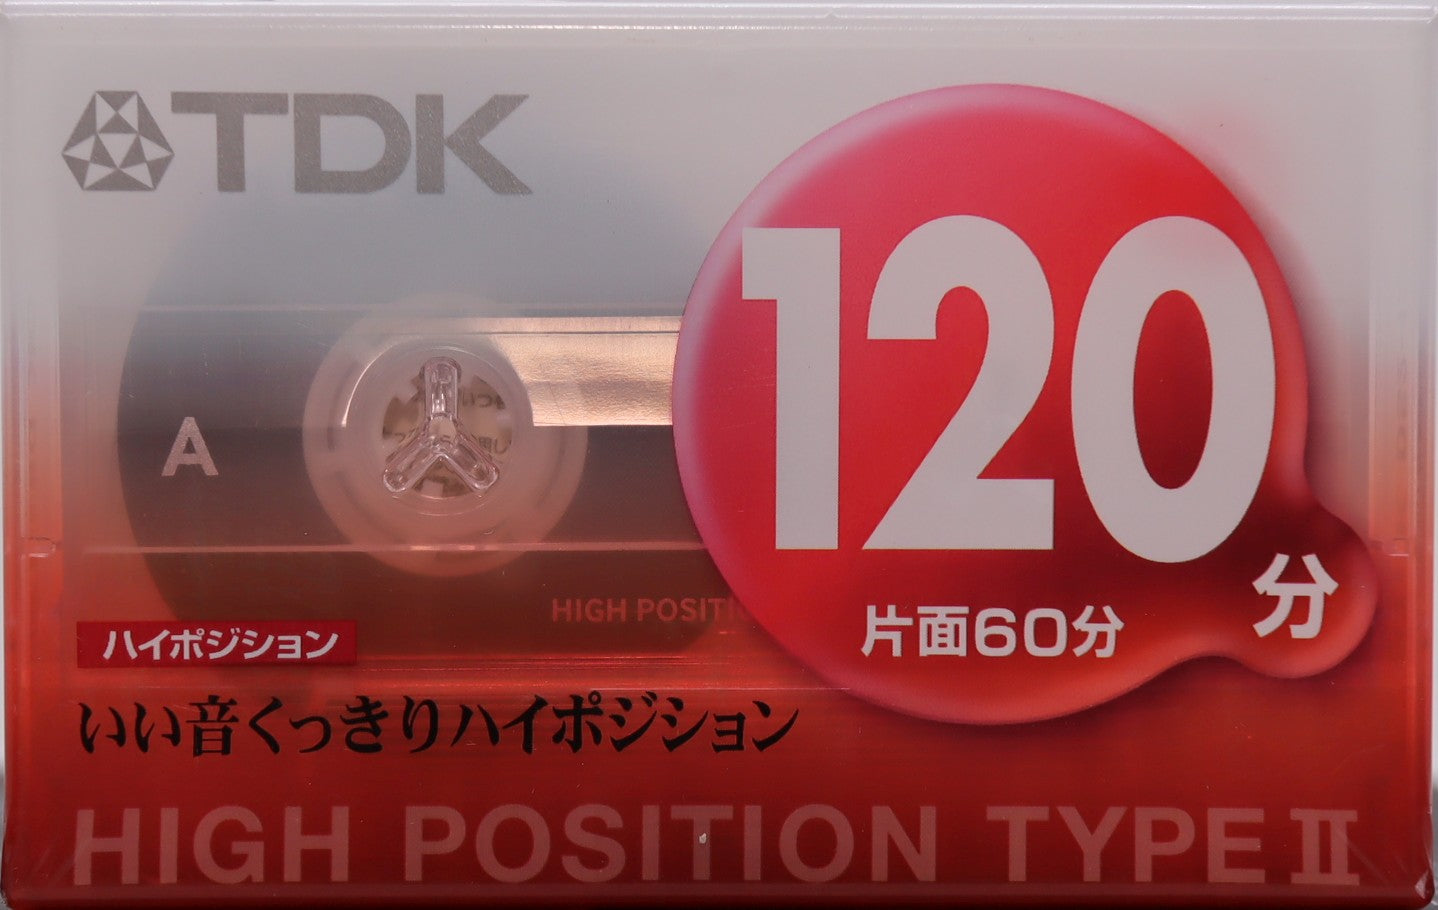 TDK DS2 (1998-1999 JP) Ultra Ferric